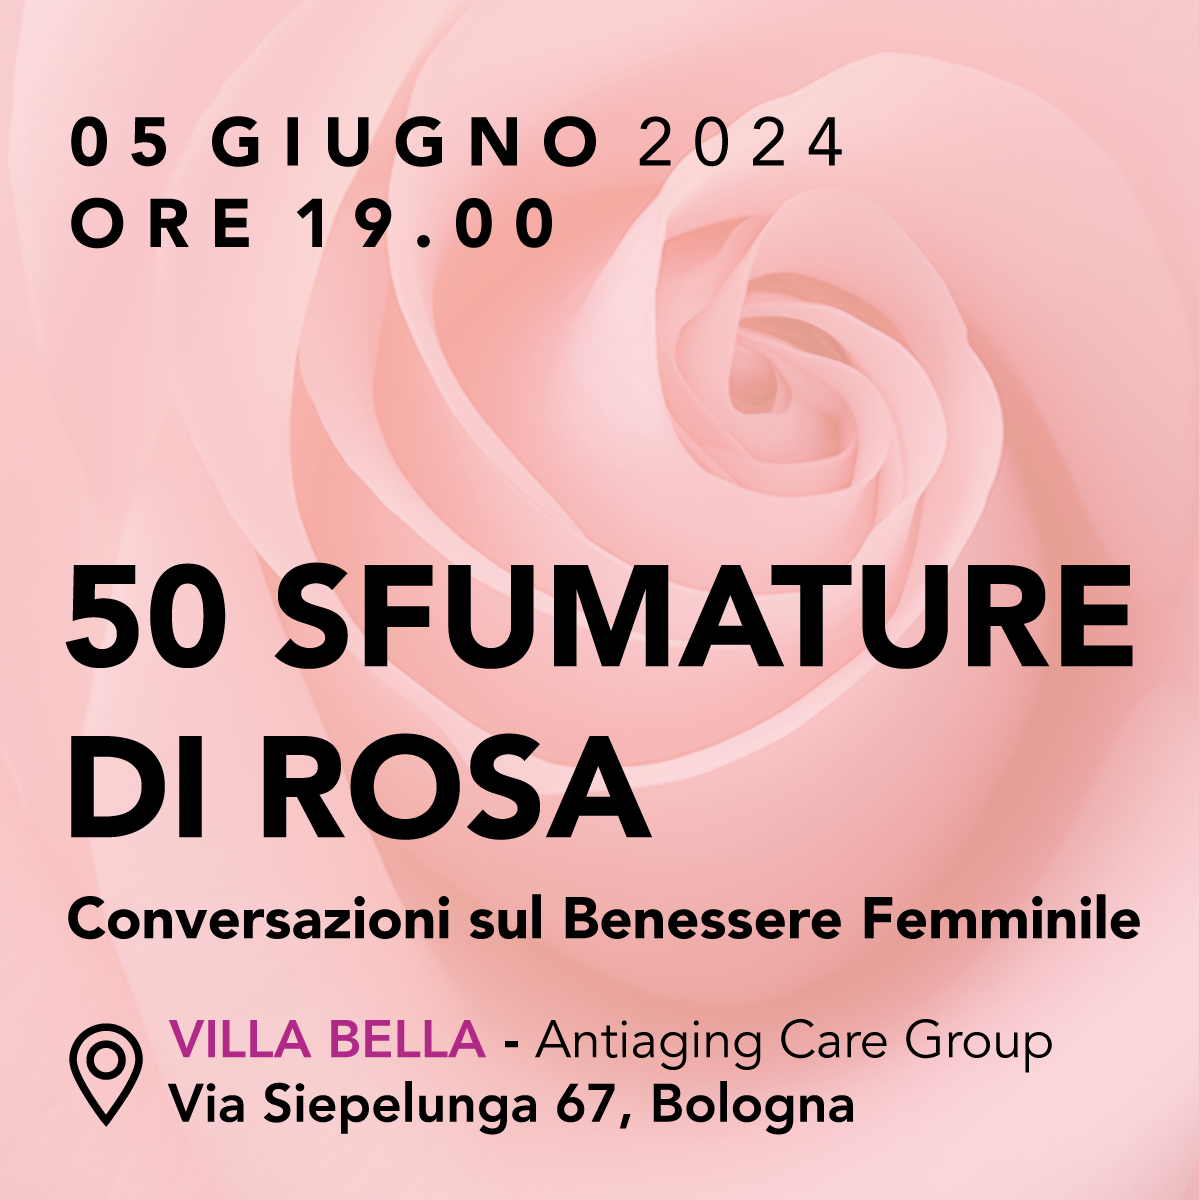 50 Sfumature di Rosa: Conversazioni sul Benessere Femminile